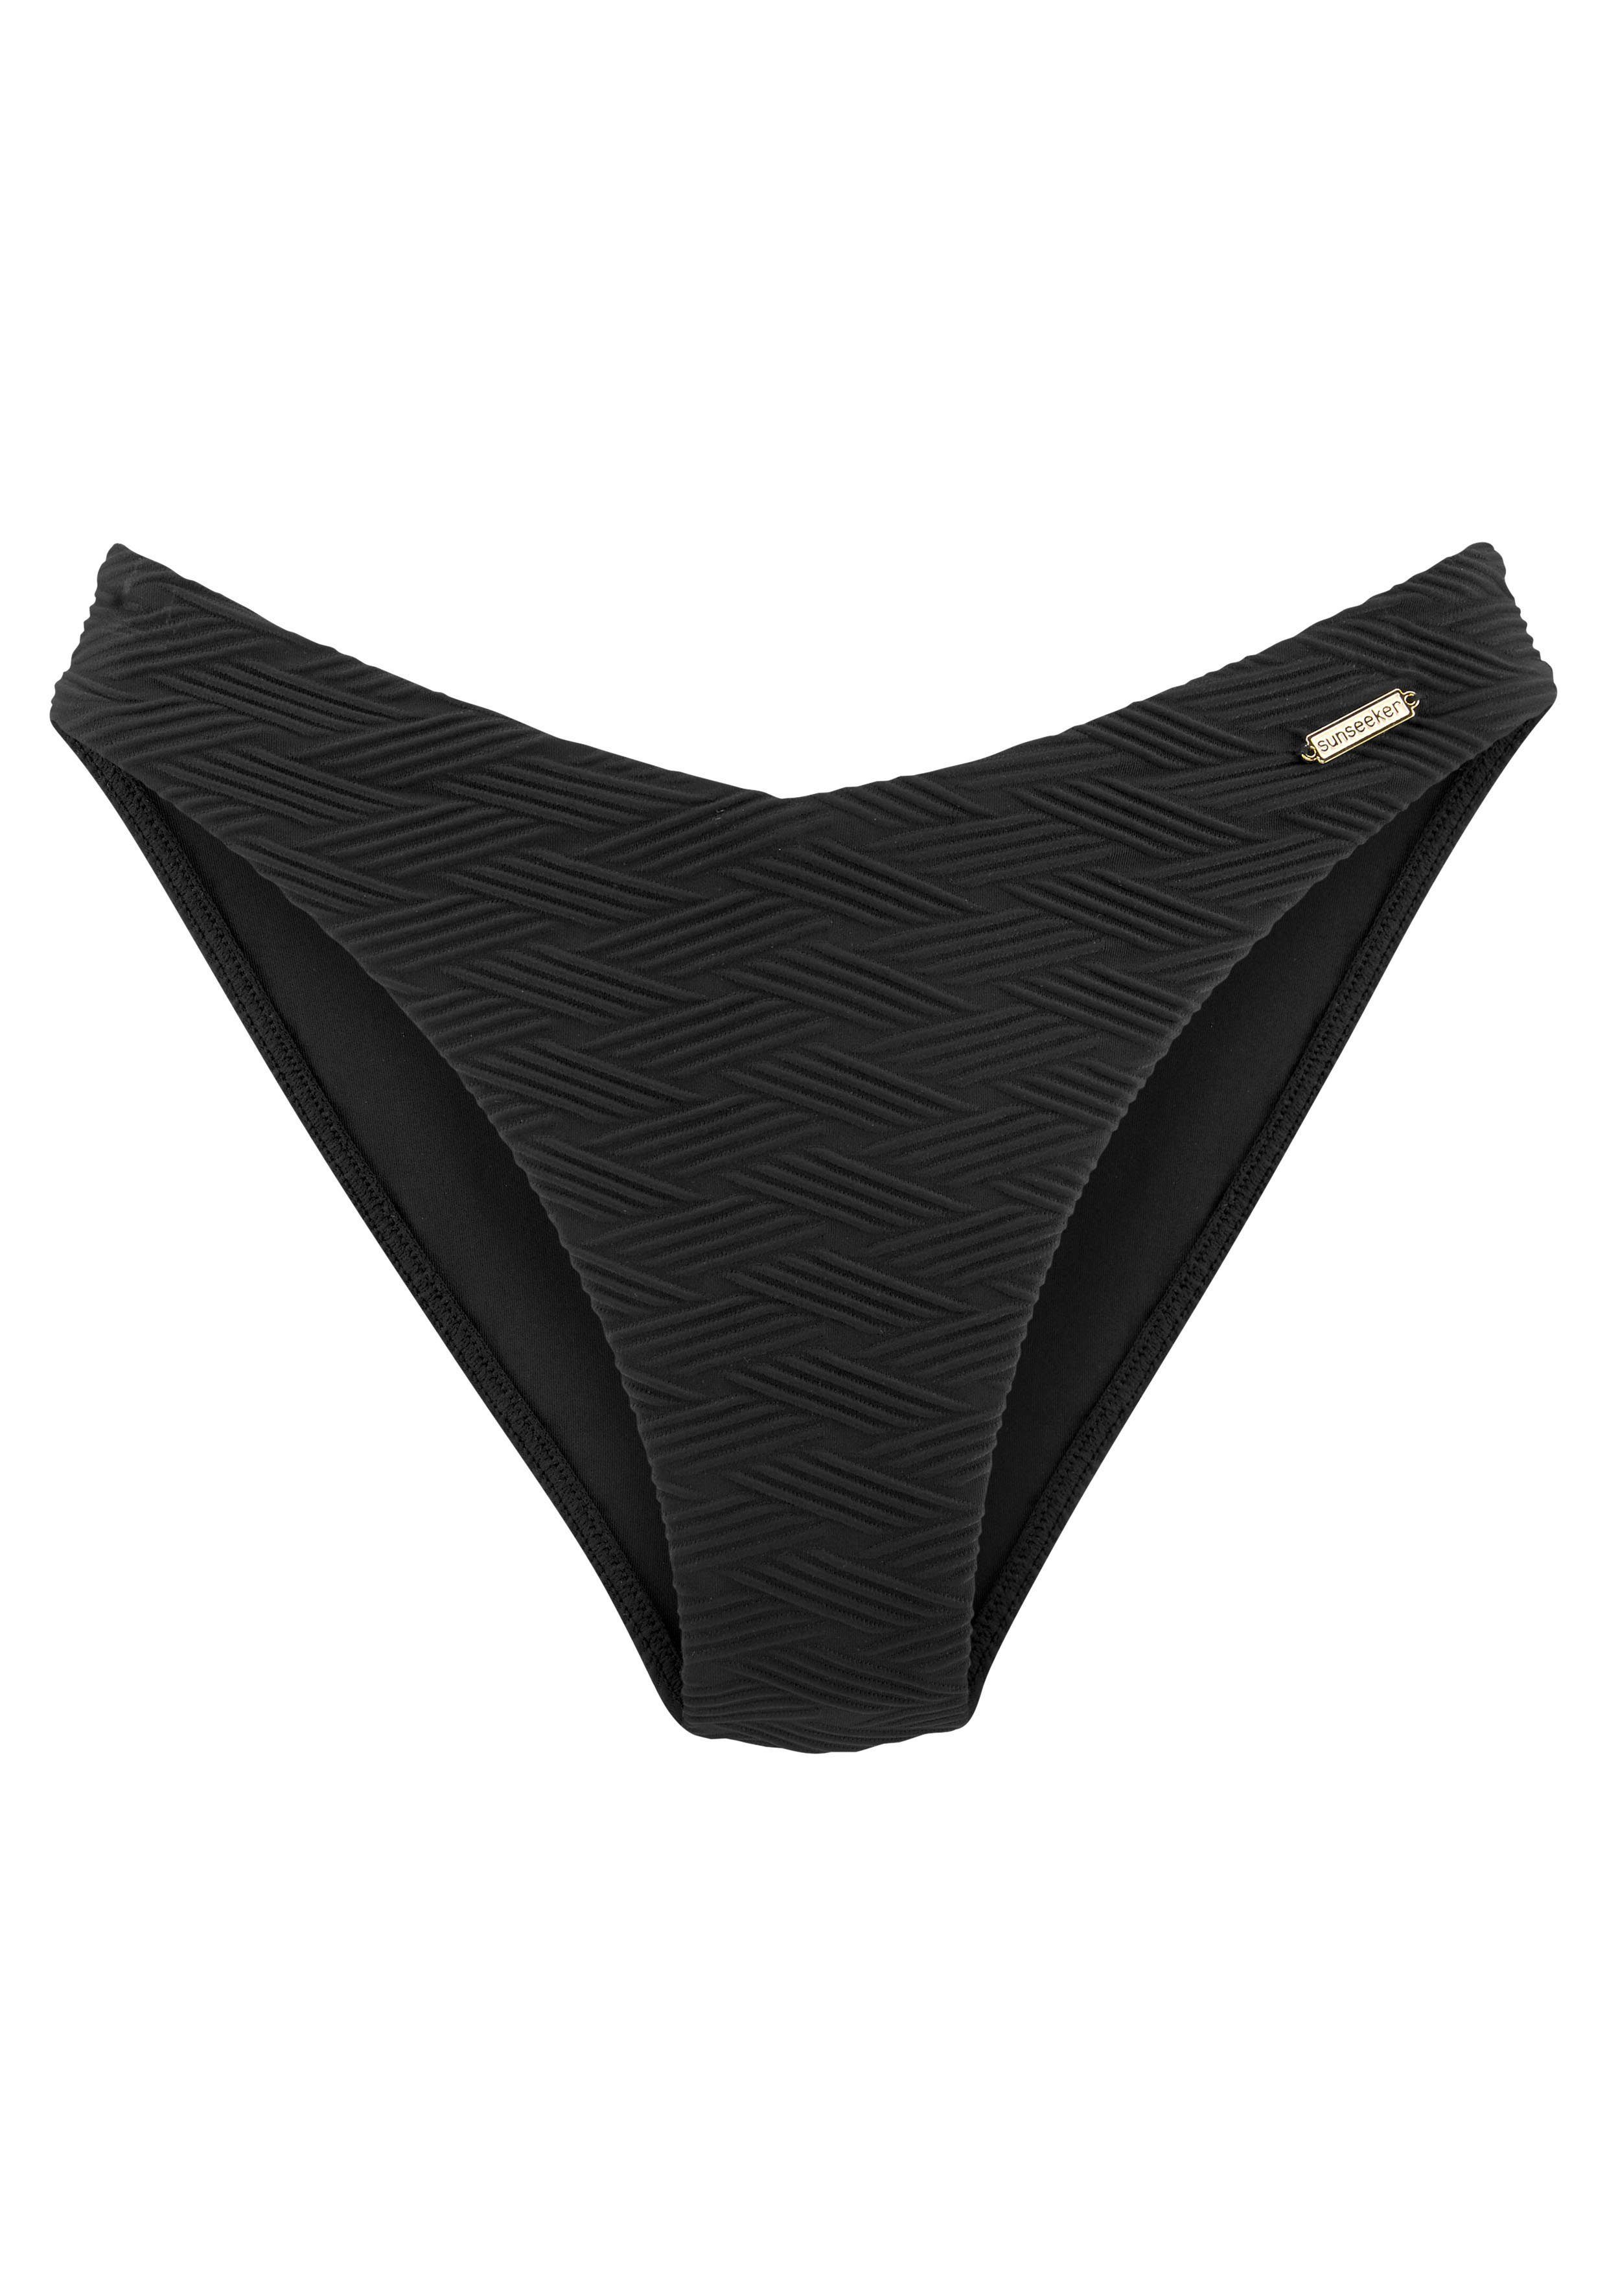 sunseeker bikinibroekje loretta met v-vormige boord zwart